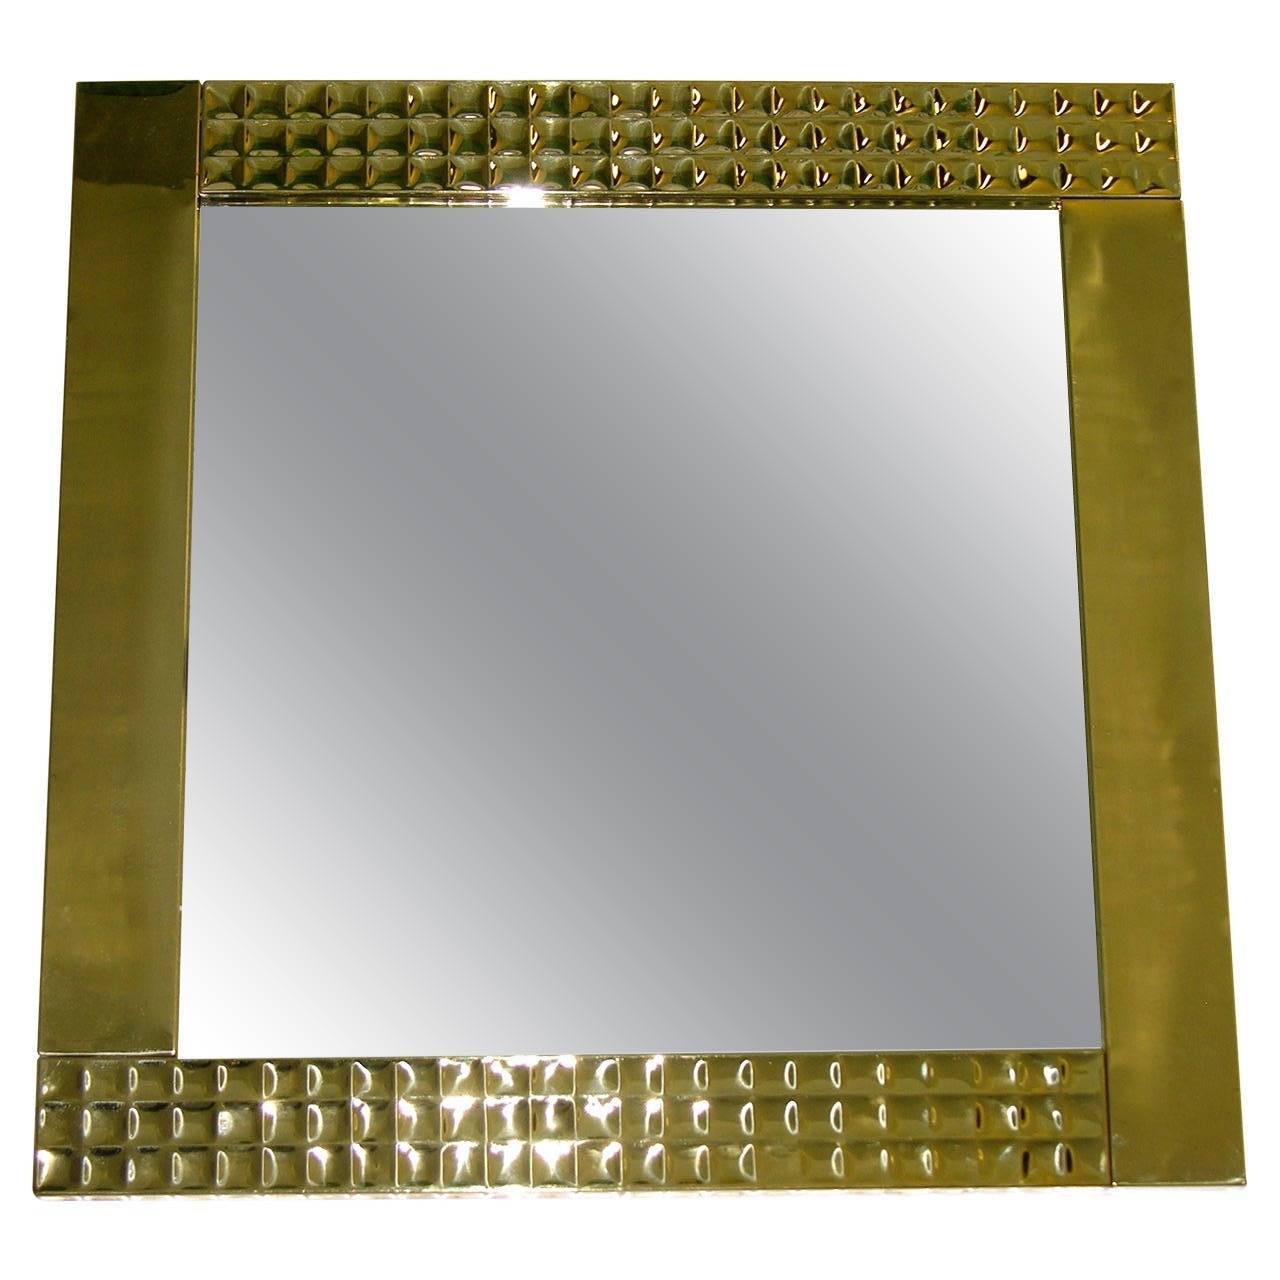 Ein sehr dekoratives Paar italienischer Spiegel, handgefertigt mit einem quadratischen Messingrahmen, verziert mit einem kostbaren gehämmerten Muster auf zwei gegenüberliegenden Seiten, das diamantartige Reflexe erzeugt. Kann auf beide Arten